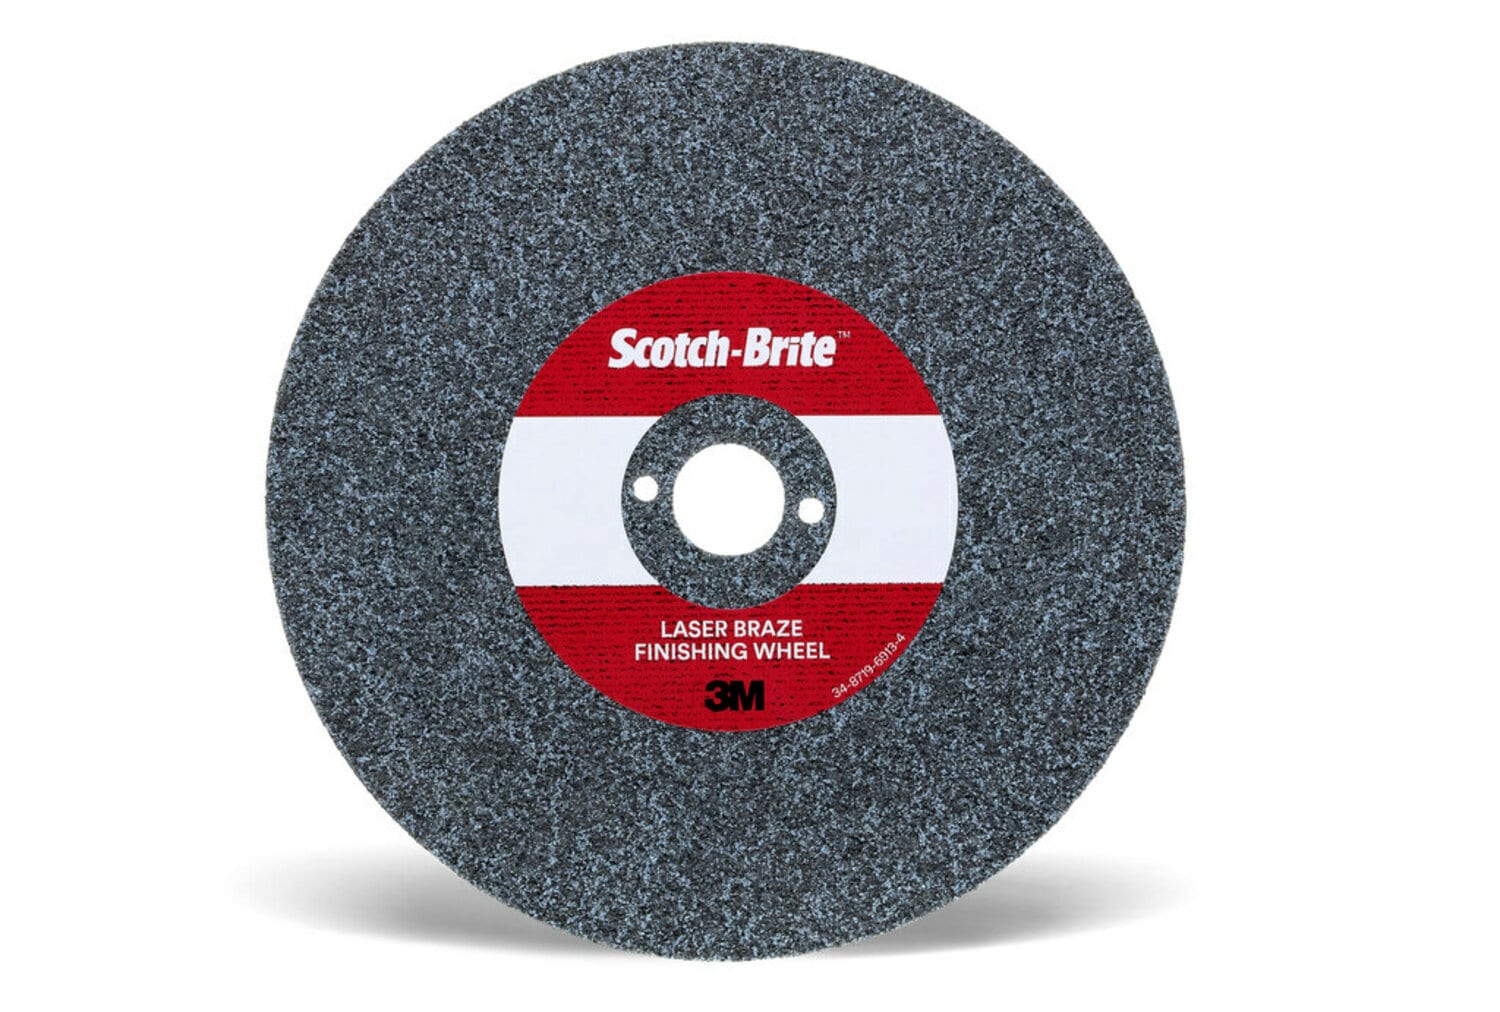 7100115822 - Scotch-Brite Laser Braze Finishing Wheel, LB-UW, 4 in x 4.2 mm x 3/8
in, 20 ea/Case